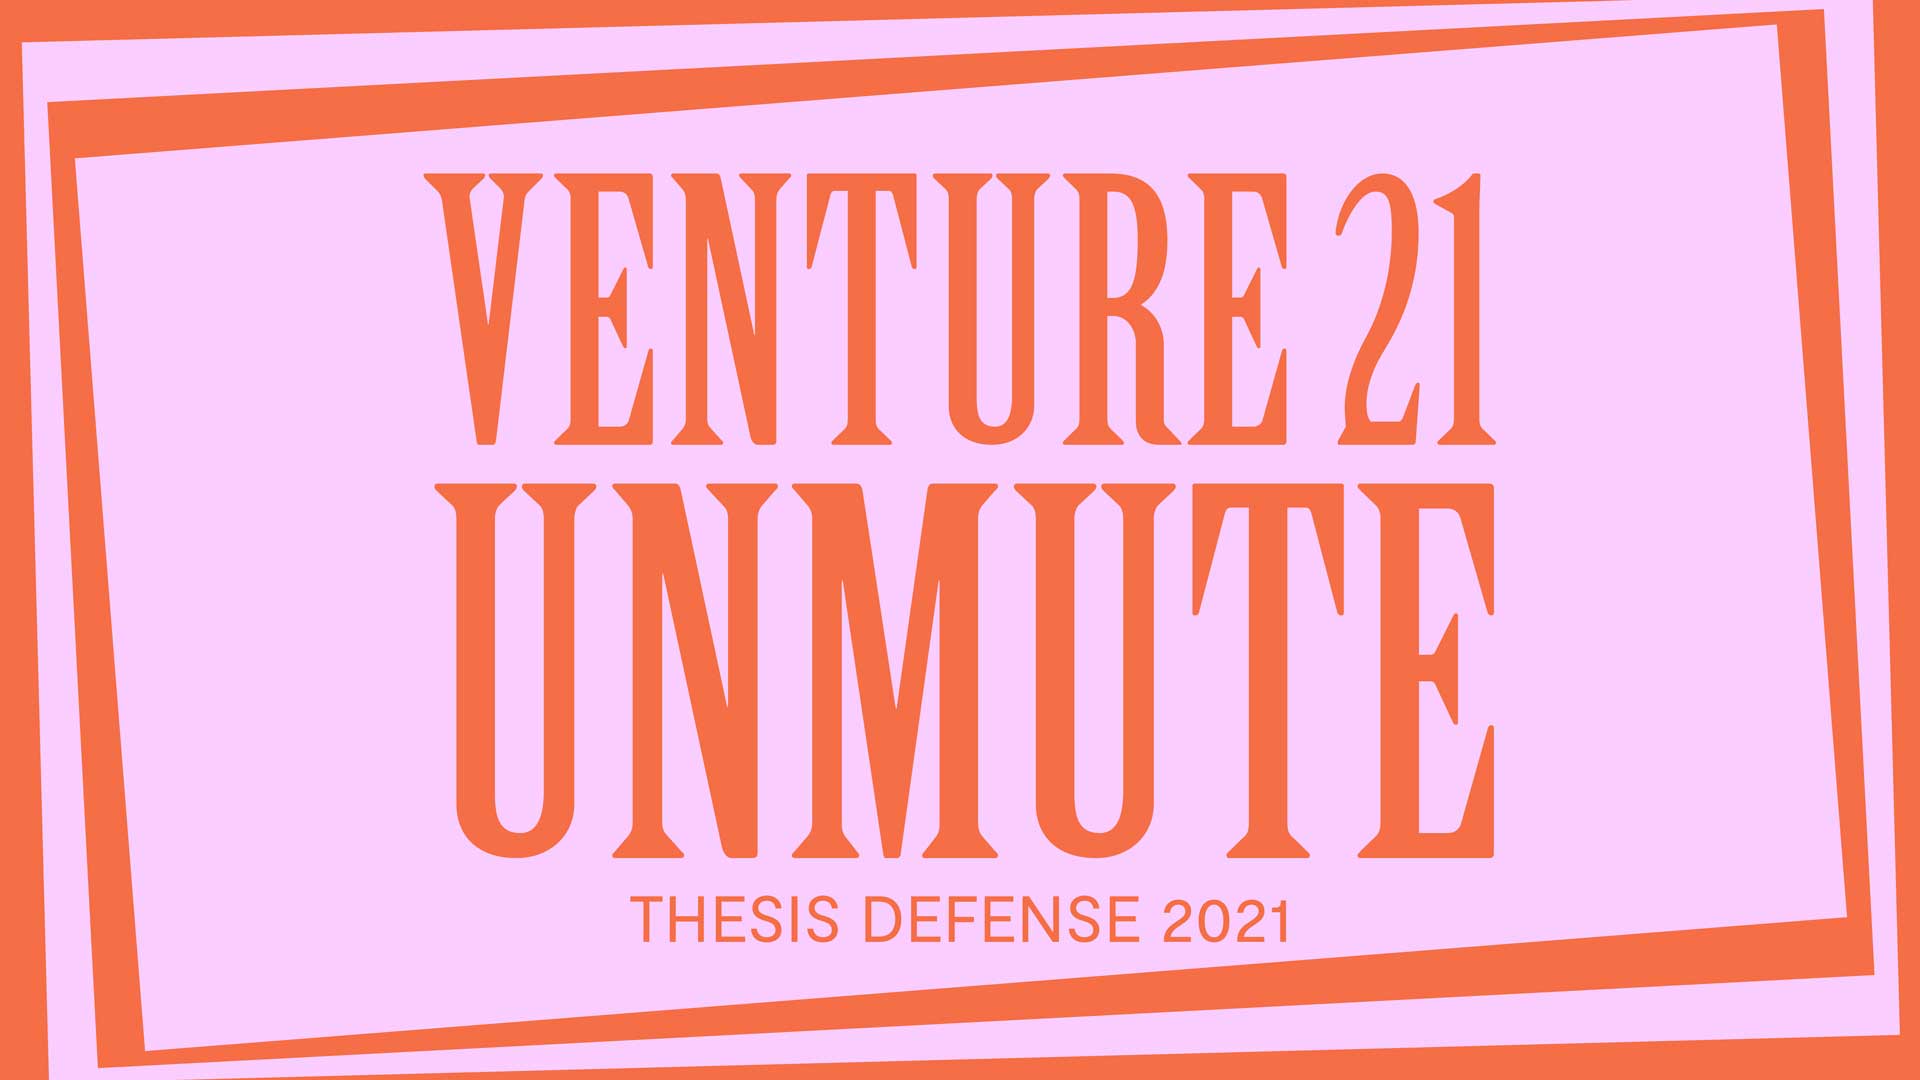 Venture 2021 Unmute pink and orange thesis defense graphic